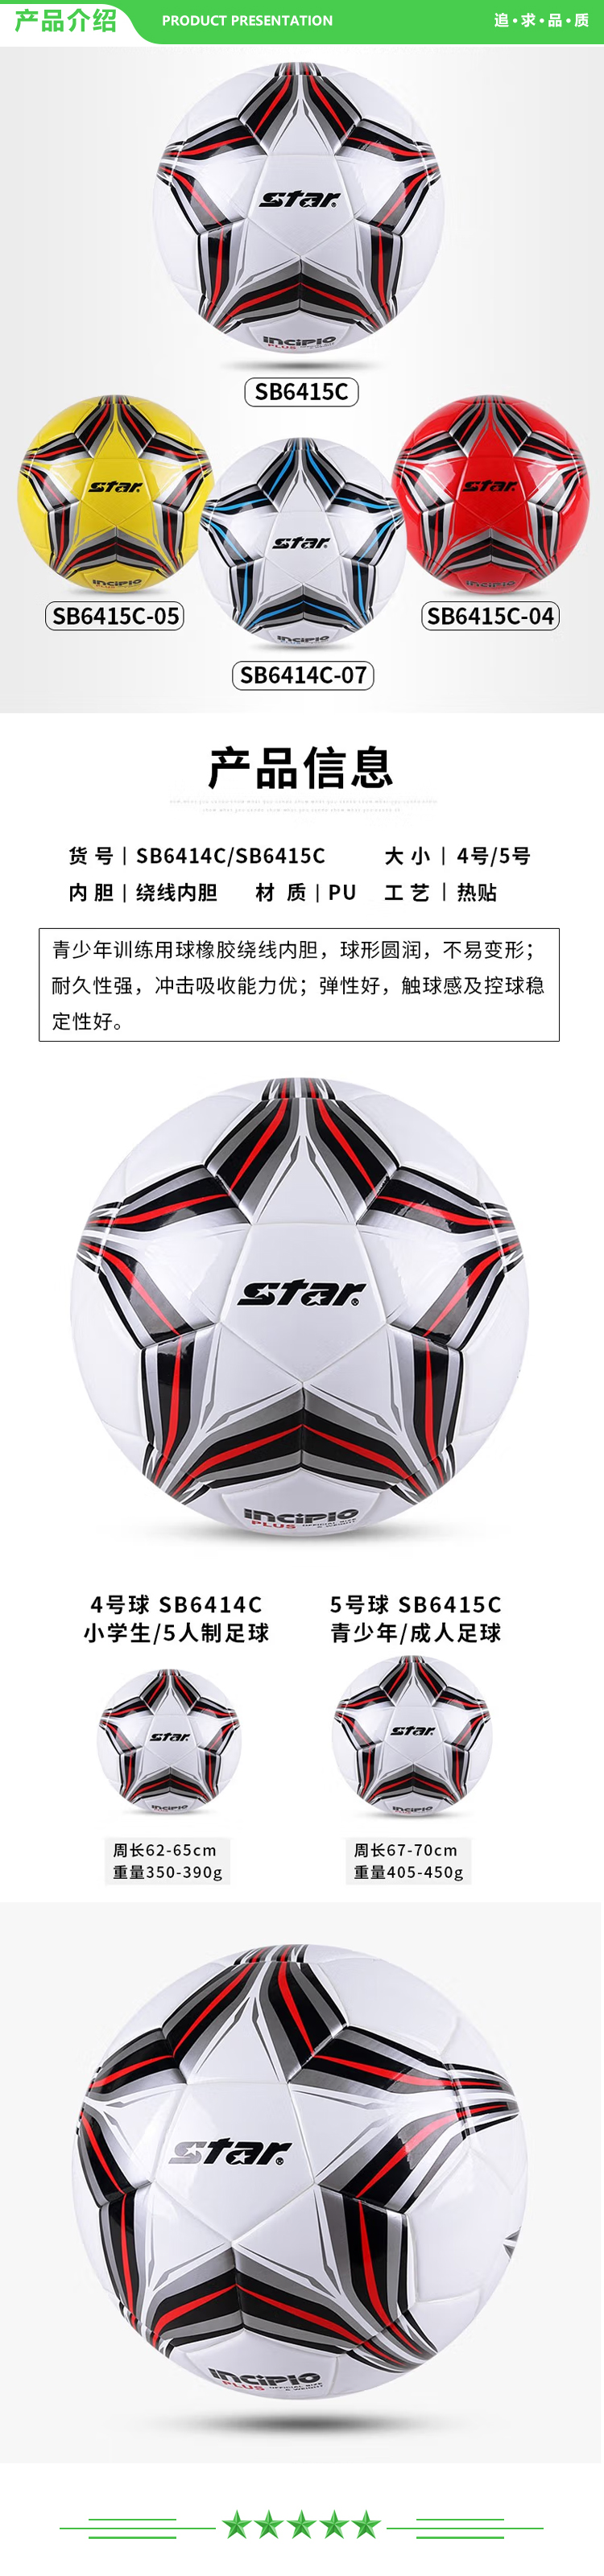 世达 star SB6415（5号中学生 成人用球）足球 4号中学生儿童青少年训练比赛用球稳定耐磨.jpg